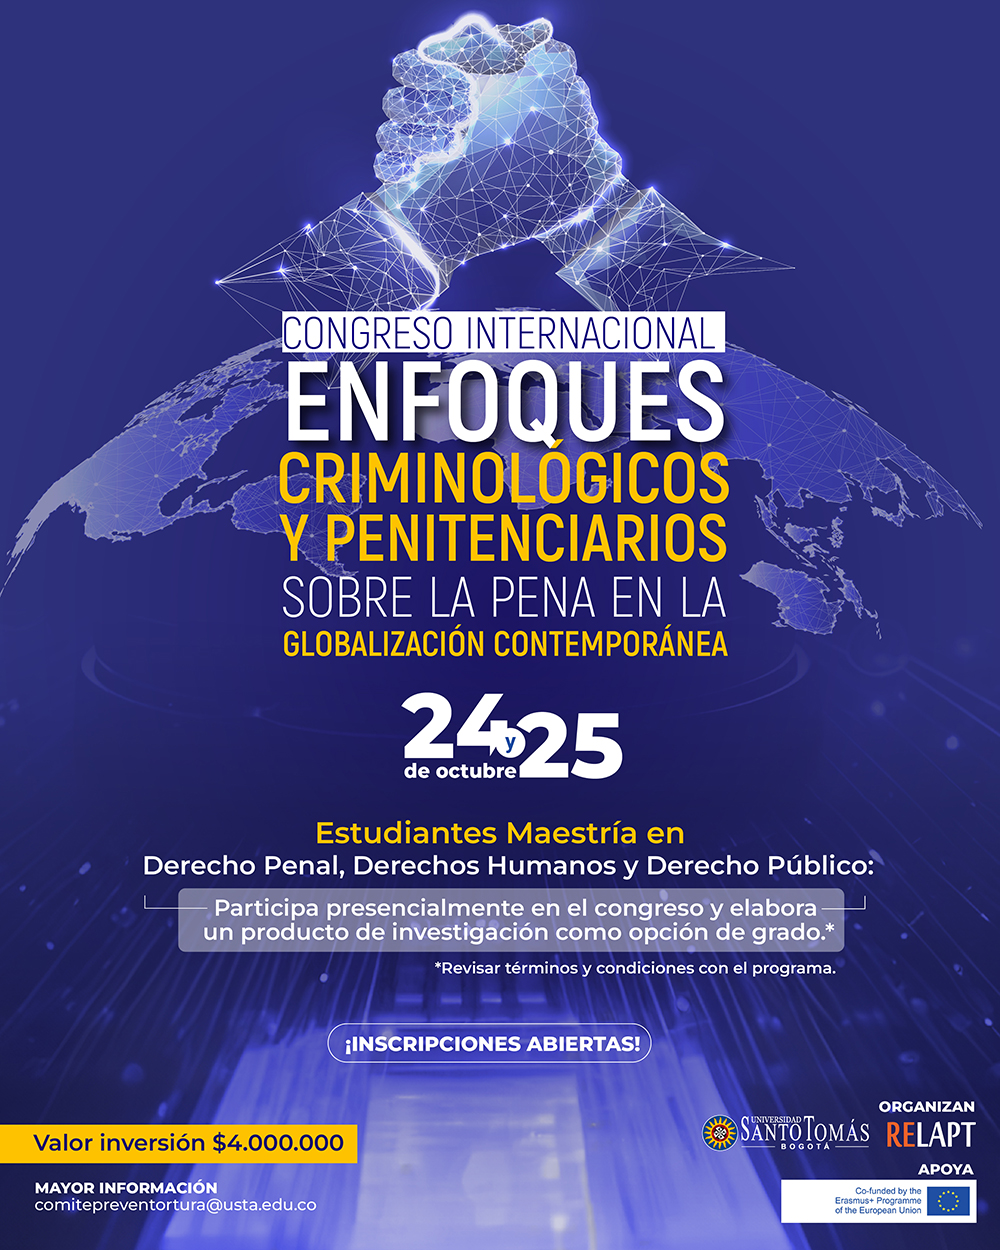 Congreso Internacional de Enfoques Criminologicos y Penitenciarios 1080x1350 ESTUDIANTE MAESTRIA opt